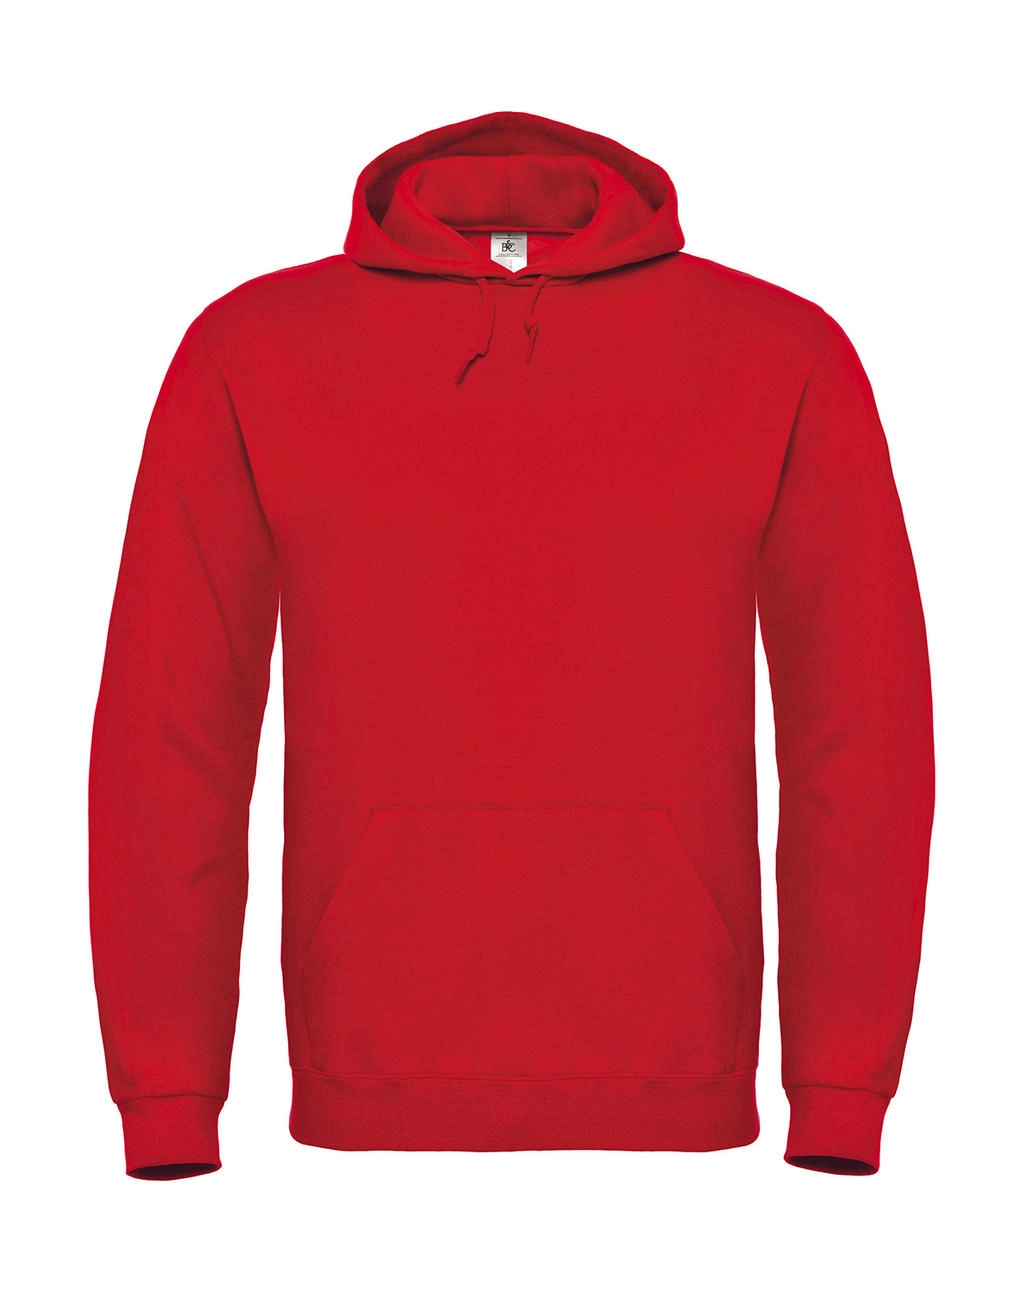 ID.003 Cotton Rich Hooded Sweatshirt zum Besticken und Bedrucken in der Farbe Red mit Ihren Logo, Schriftzug oder Motiv.